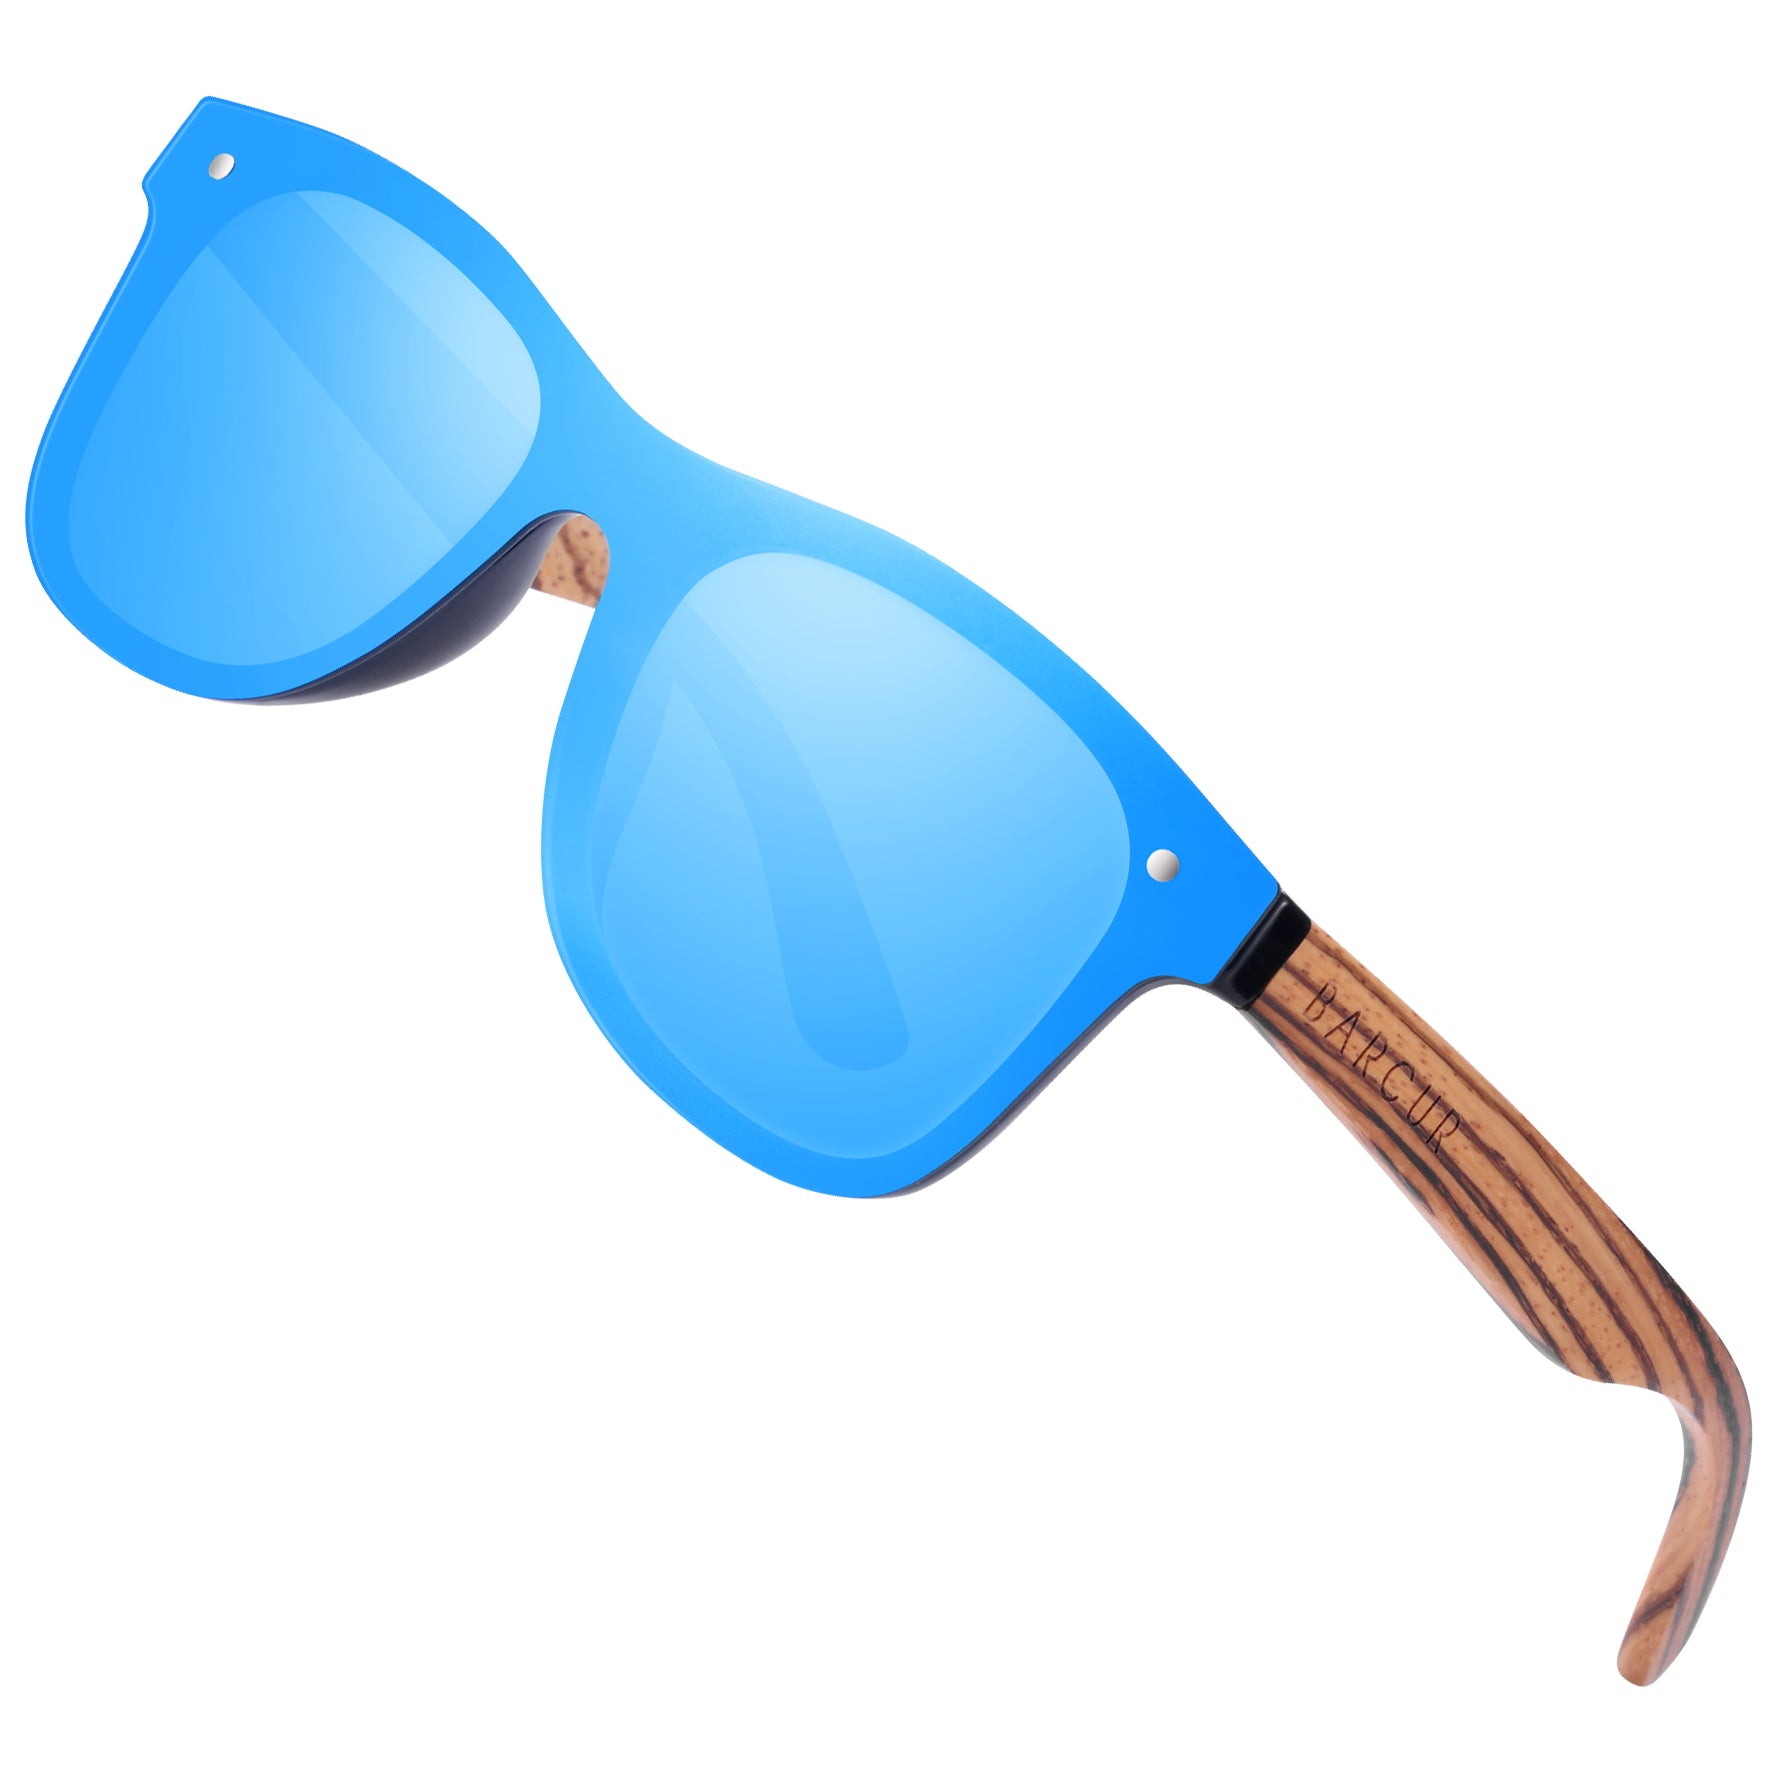 BARCUR Wooden Sunglasses Polarized Brand Women Sun glasses Vintage Wood  Case Beach Sunglasses for Men Driving gafas de sol - AliExpress